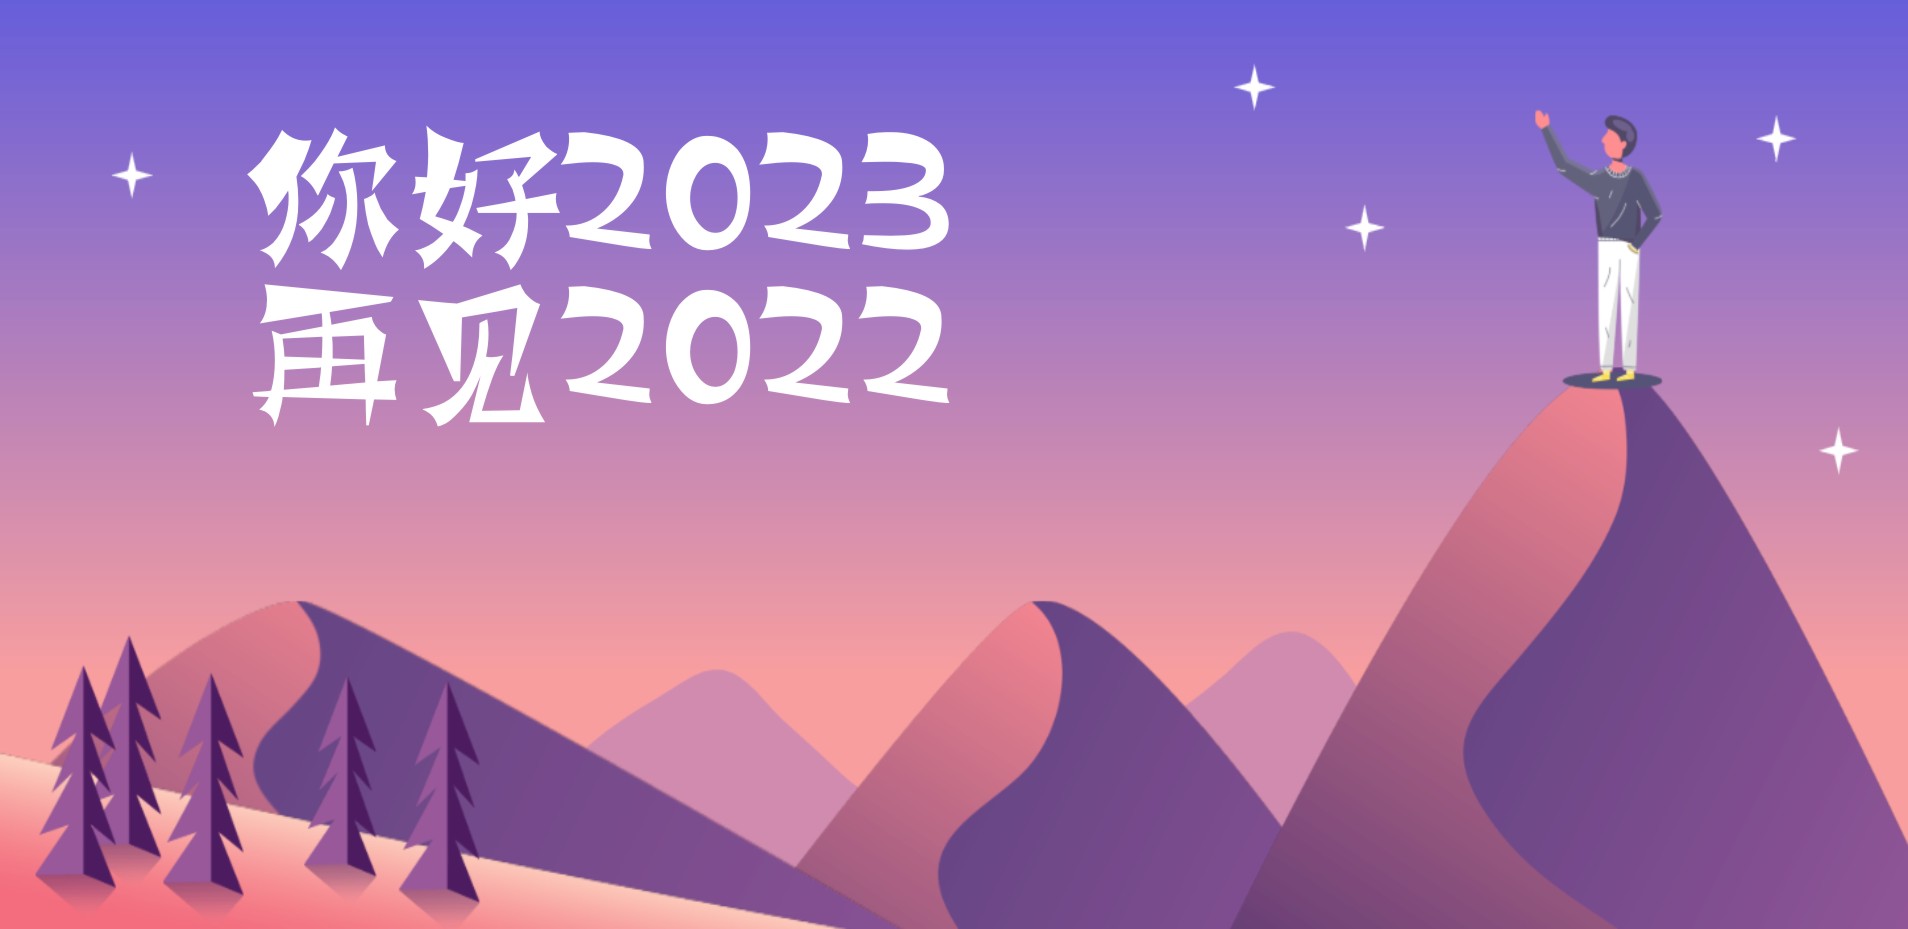 你好2023 再见2022